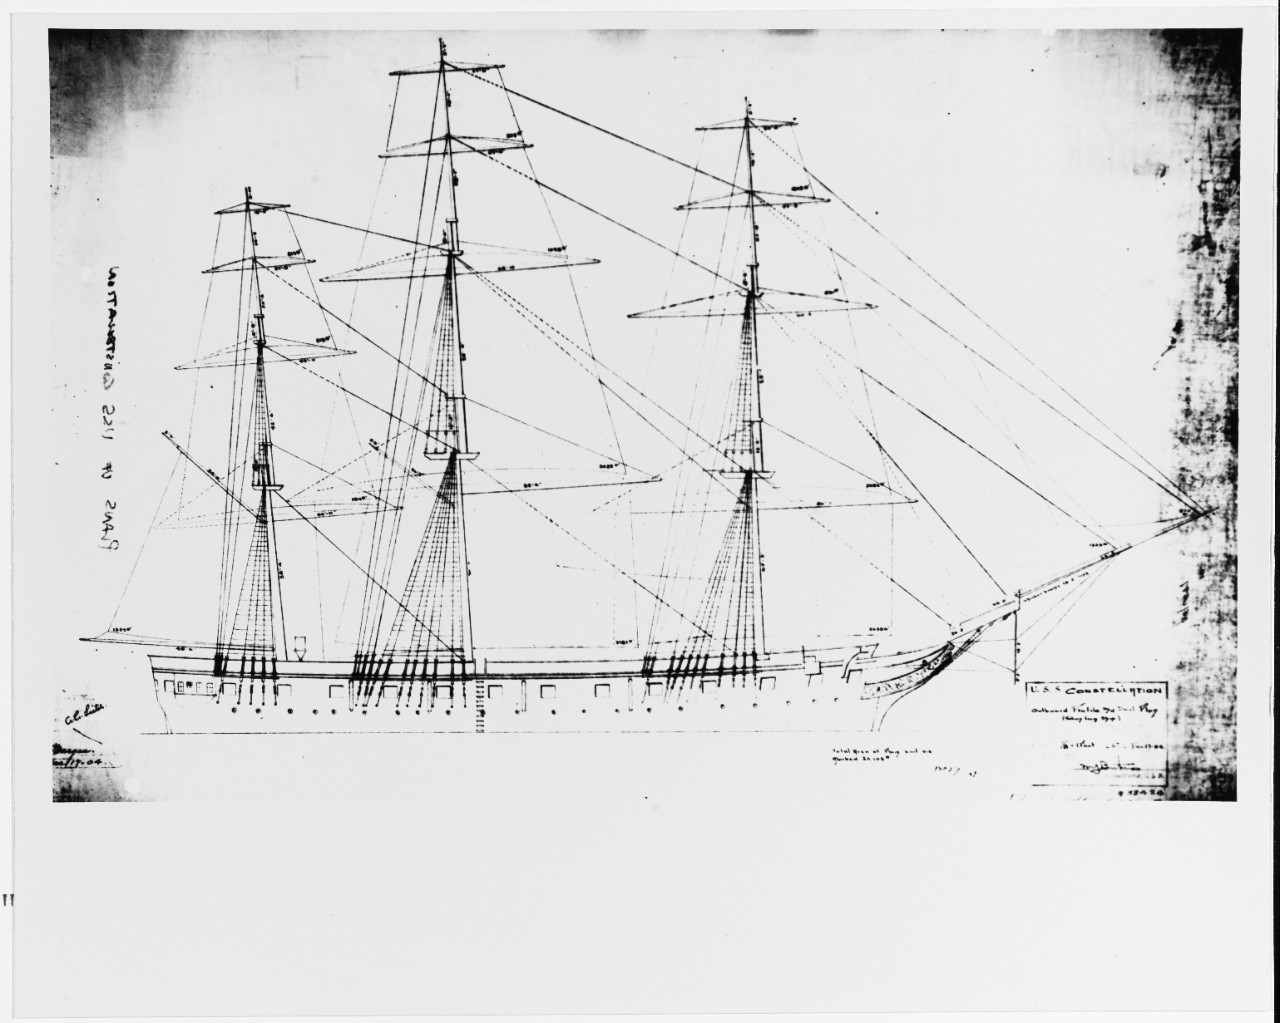 USS CONSTELLATION, 1855-1955